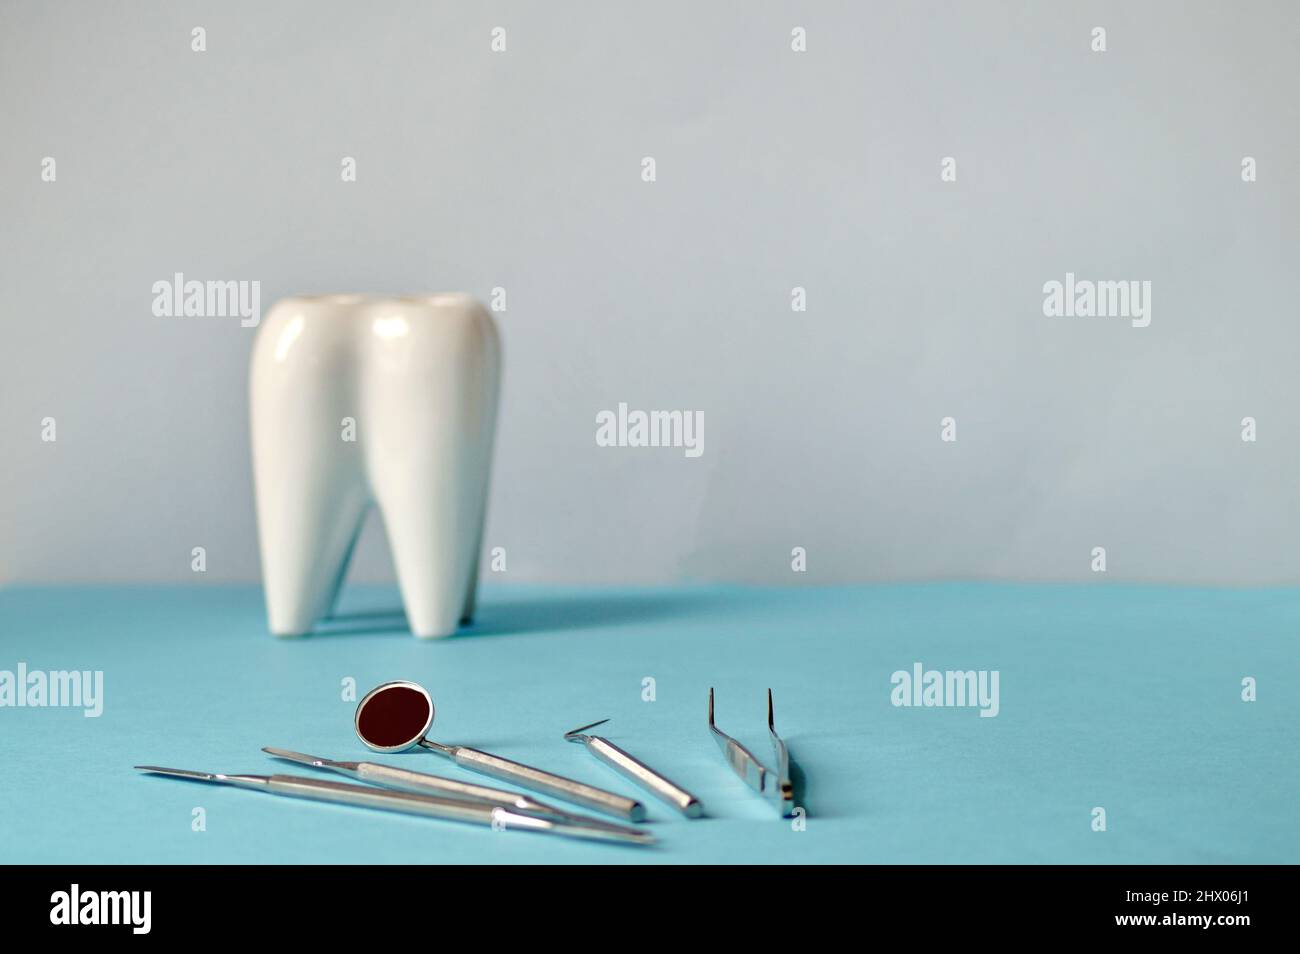 sul tavolo di fronte ad un bel dente bianco giacciono gli strumenti dentistici del dentista. L'immagine è orizzontale Foto Stock